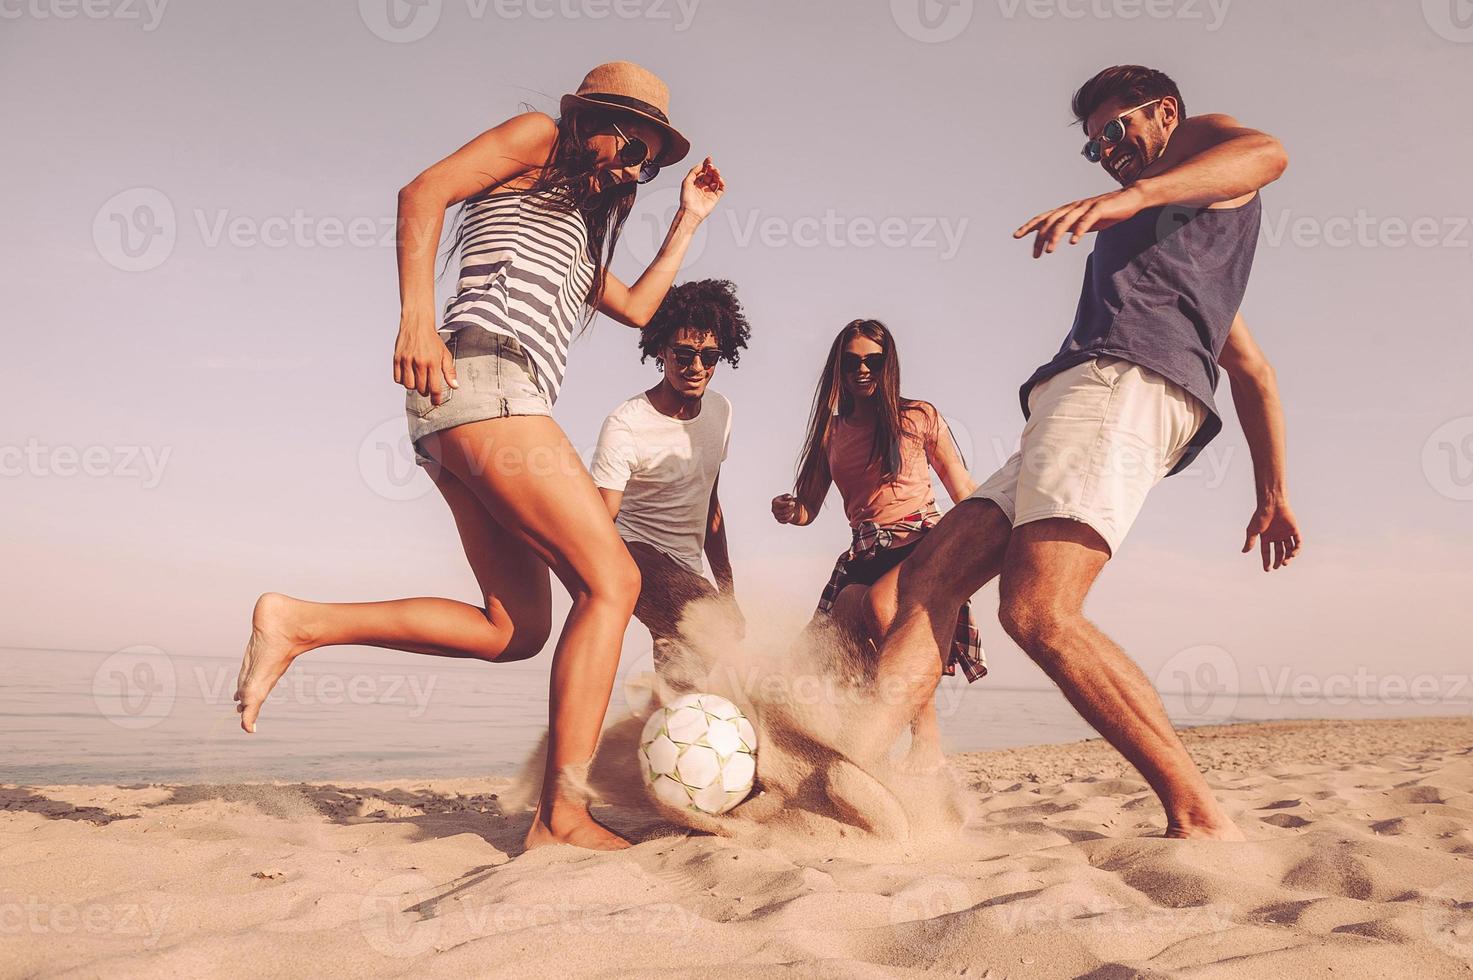 moment de plaisir entre amis. groupe de jeunes joyeux jouant avec un ballon de football sur la plage photo